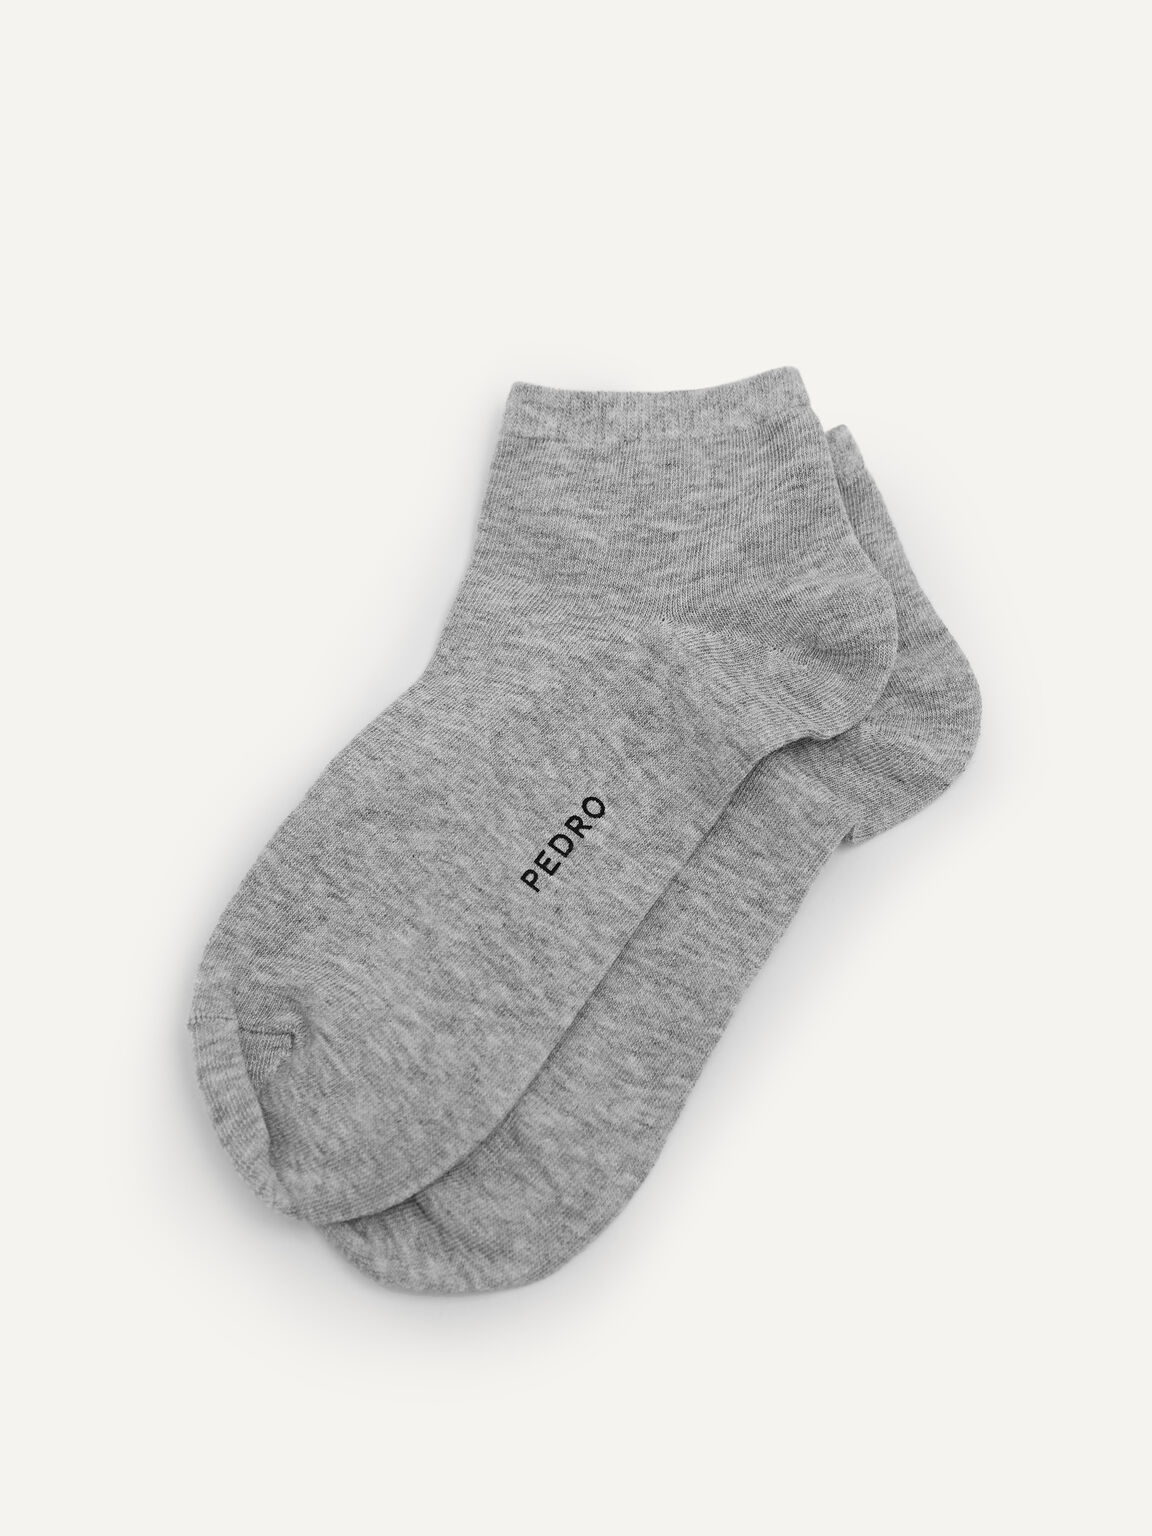 Women's Ankle Socks, Light Grey